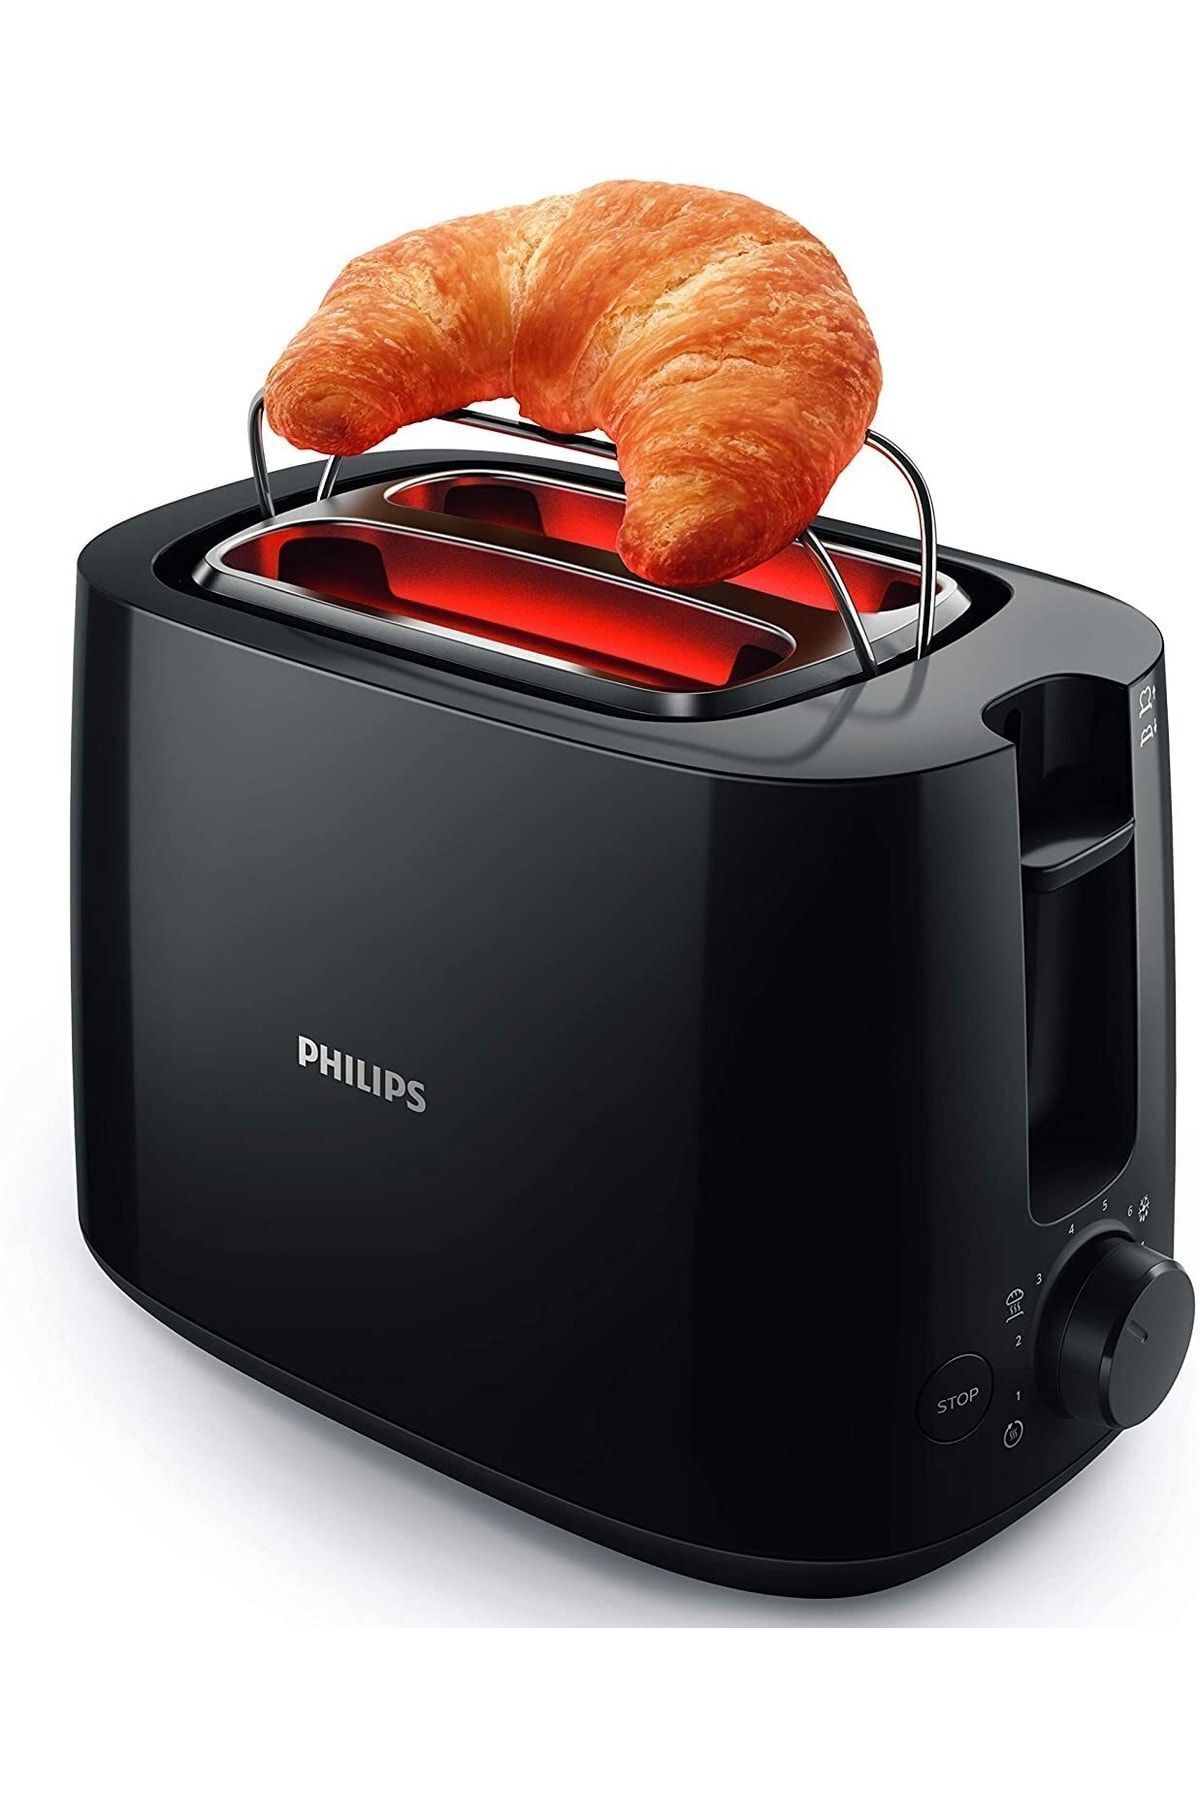 Philips Ekmek Kızartma Makinesi Evrekala